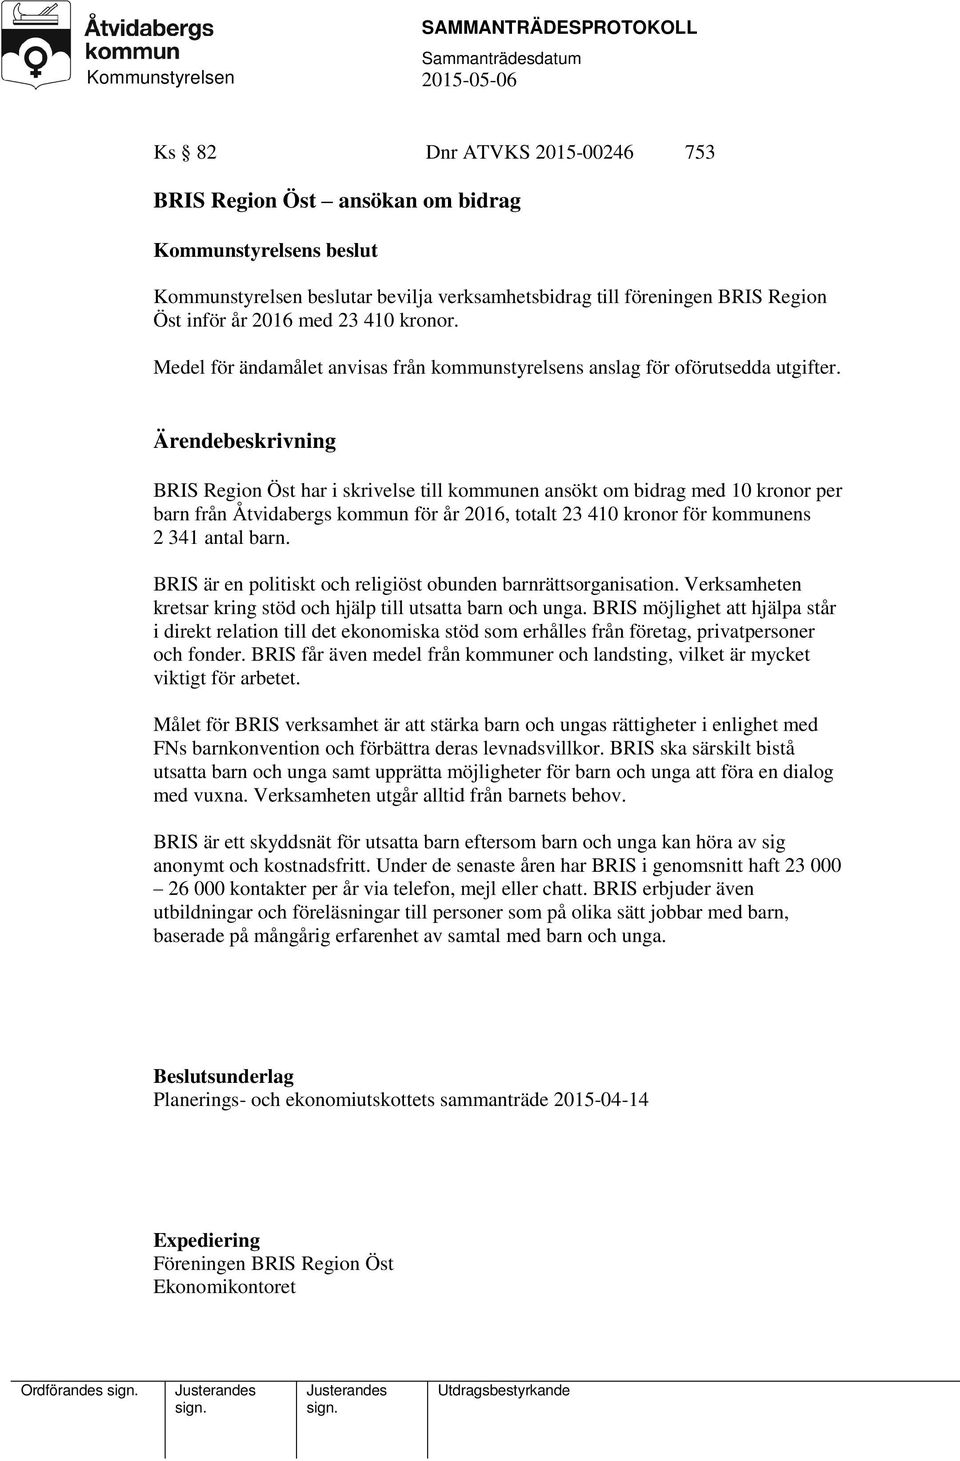 BRIS Region Öst har i skrivelse till kommunen ansökt om bidrag med 10 kronor per barn från Åtvidabergs kommun för år 2016, totalt 23 410 kronor för kommunens 2 341 antal barn.